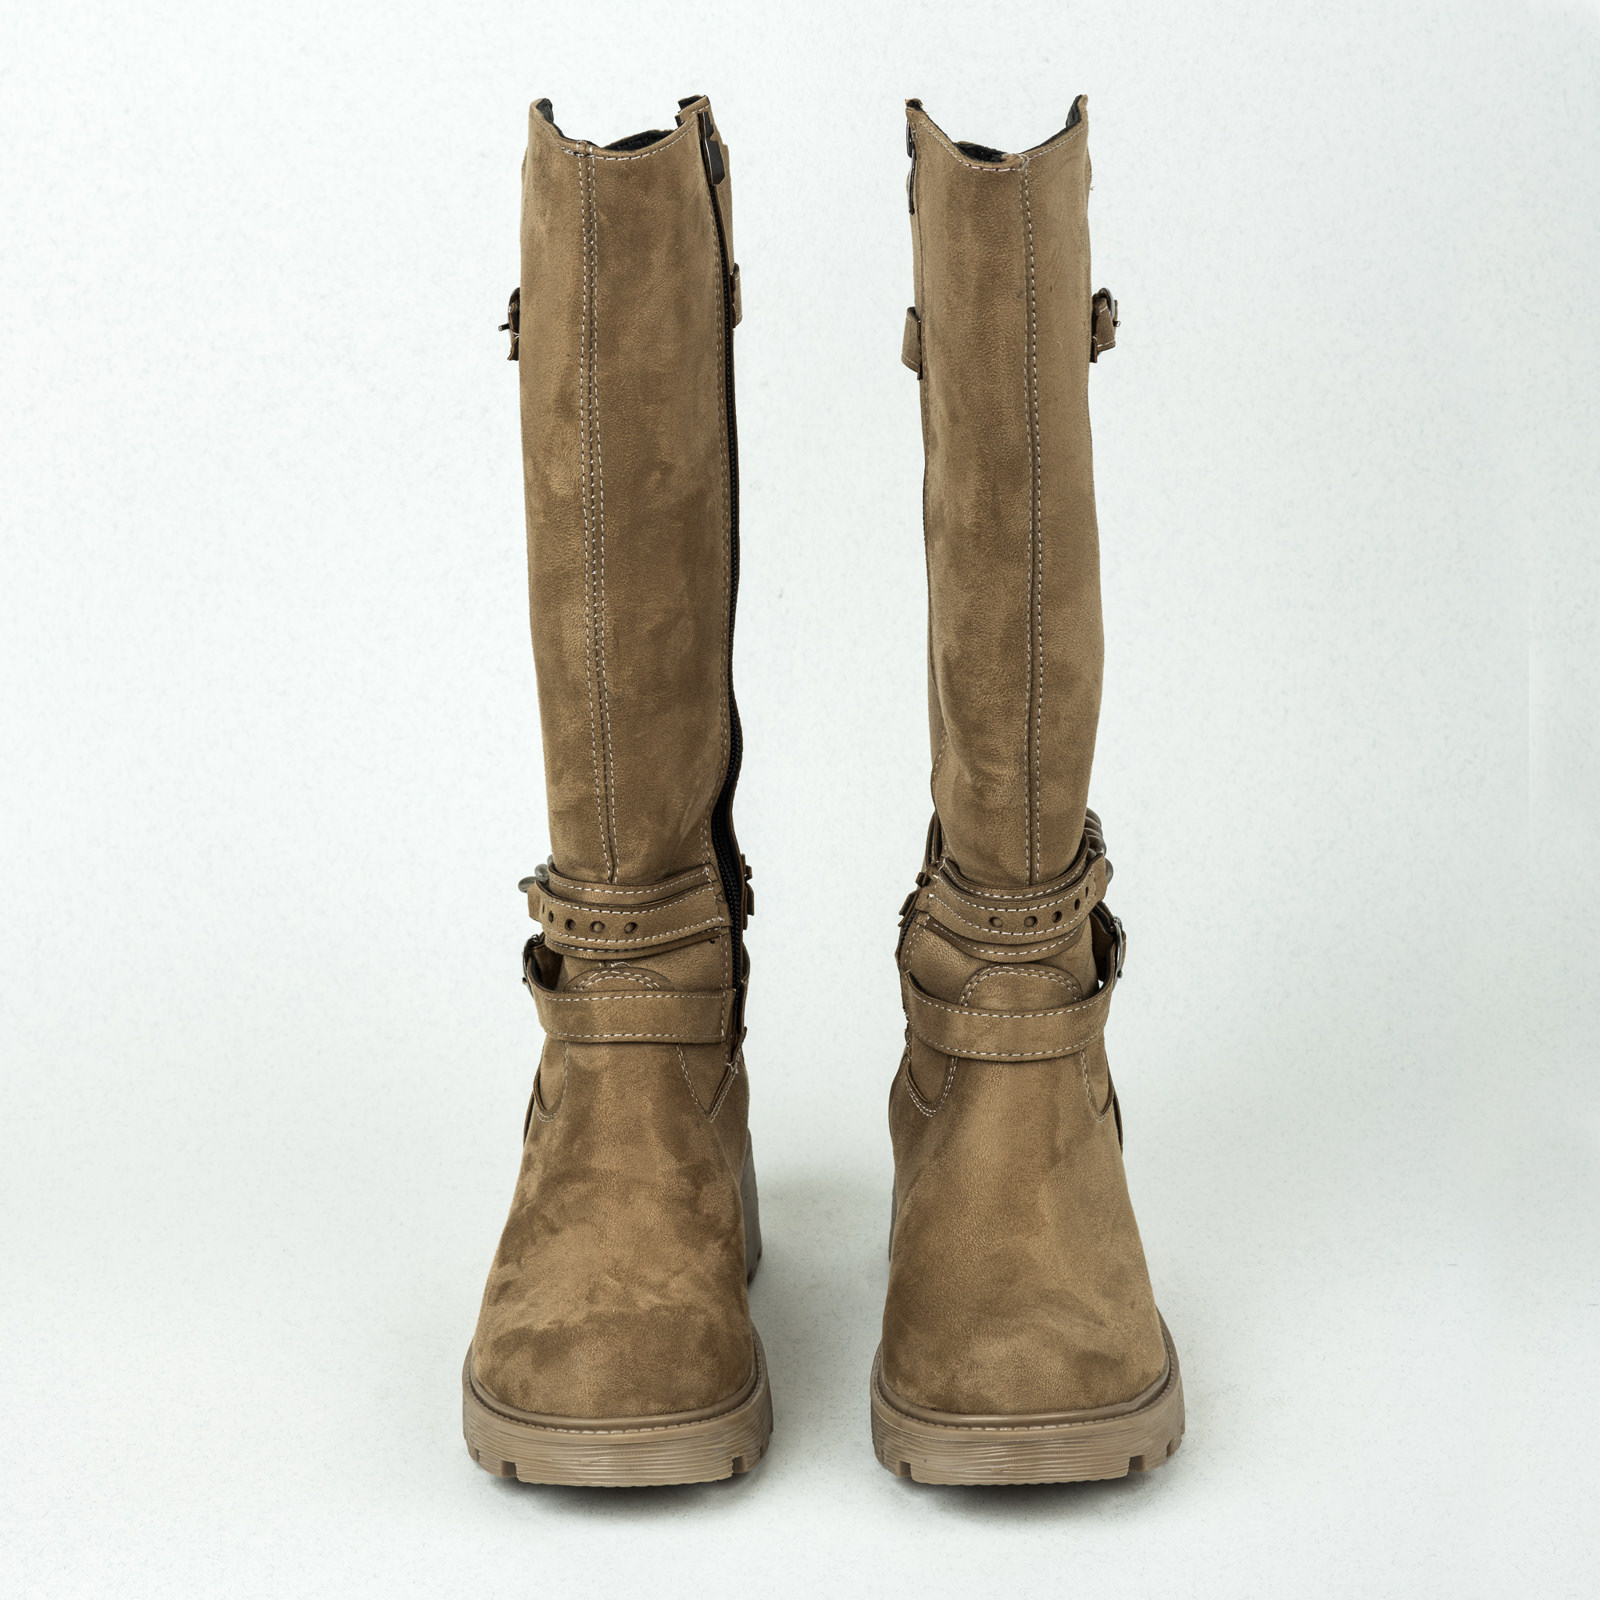 Women boots B130 - BEIGE